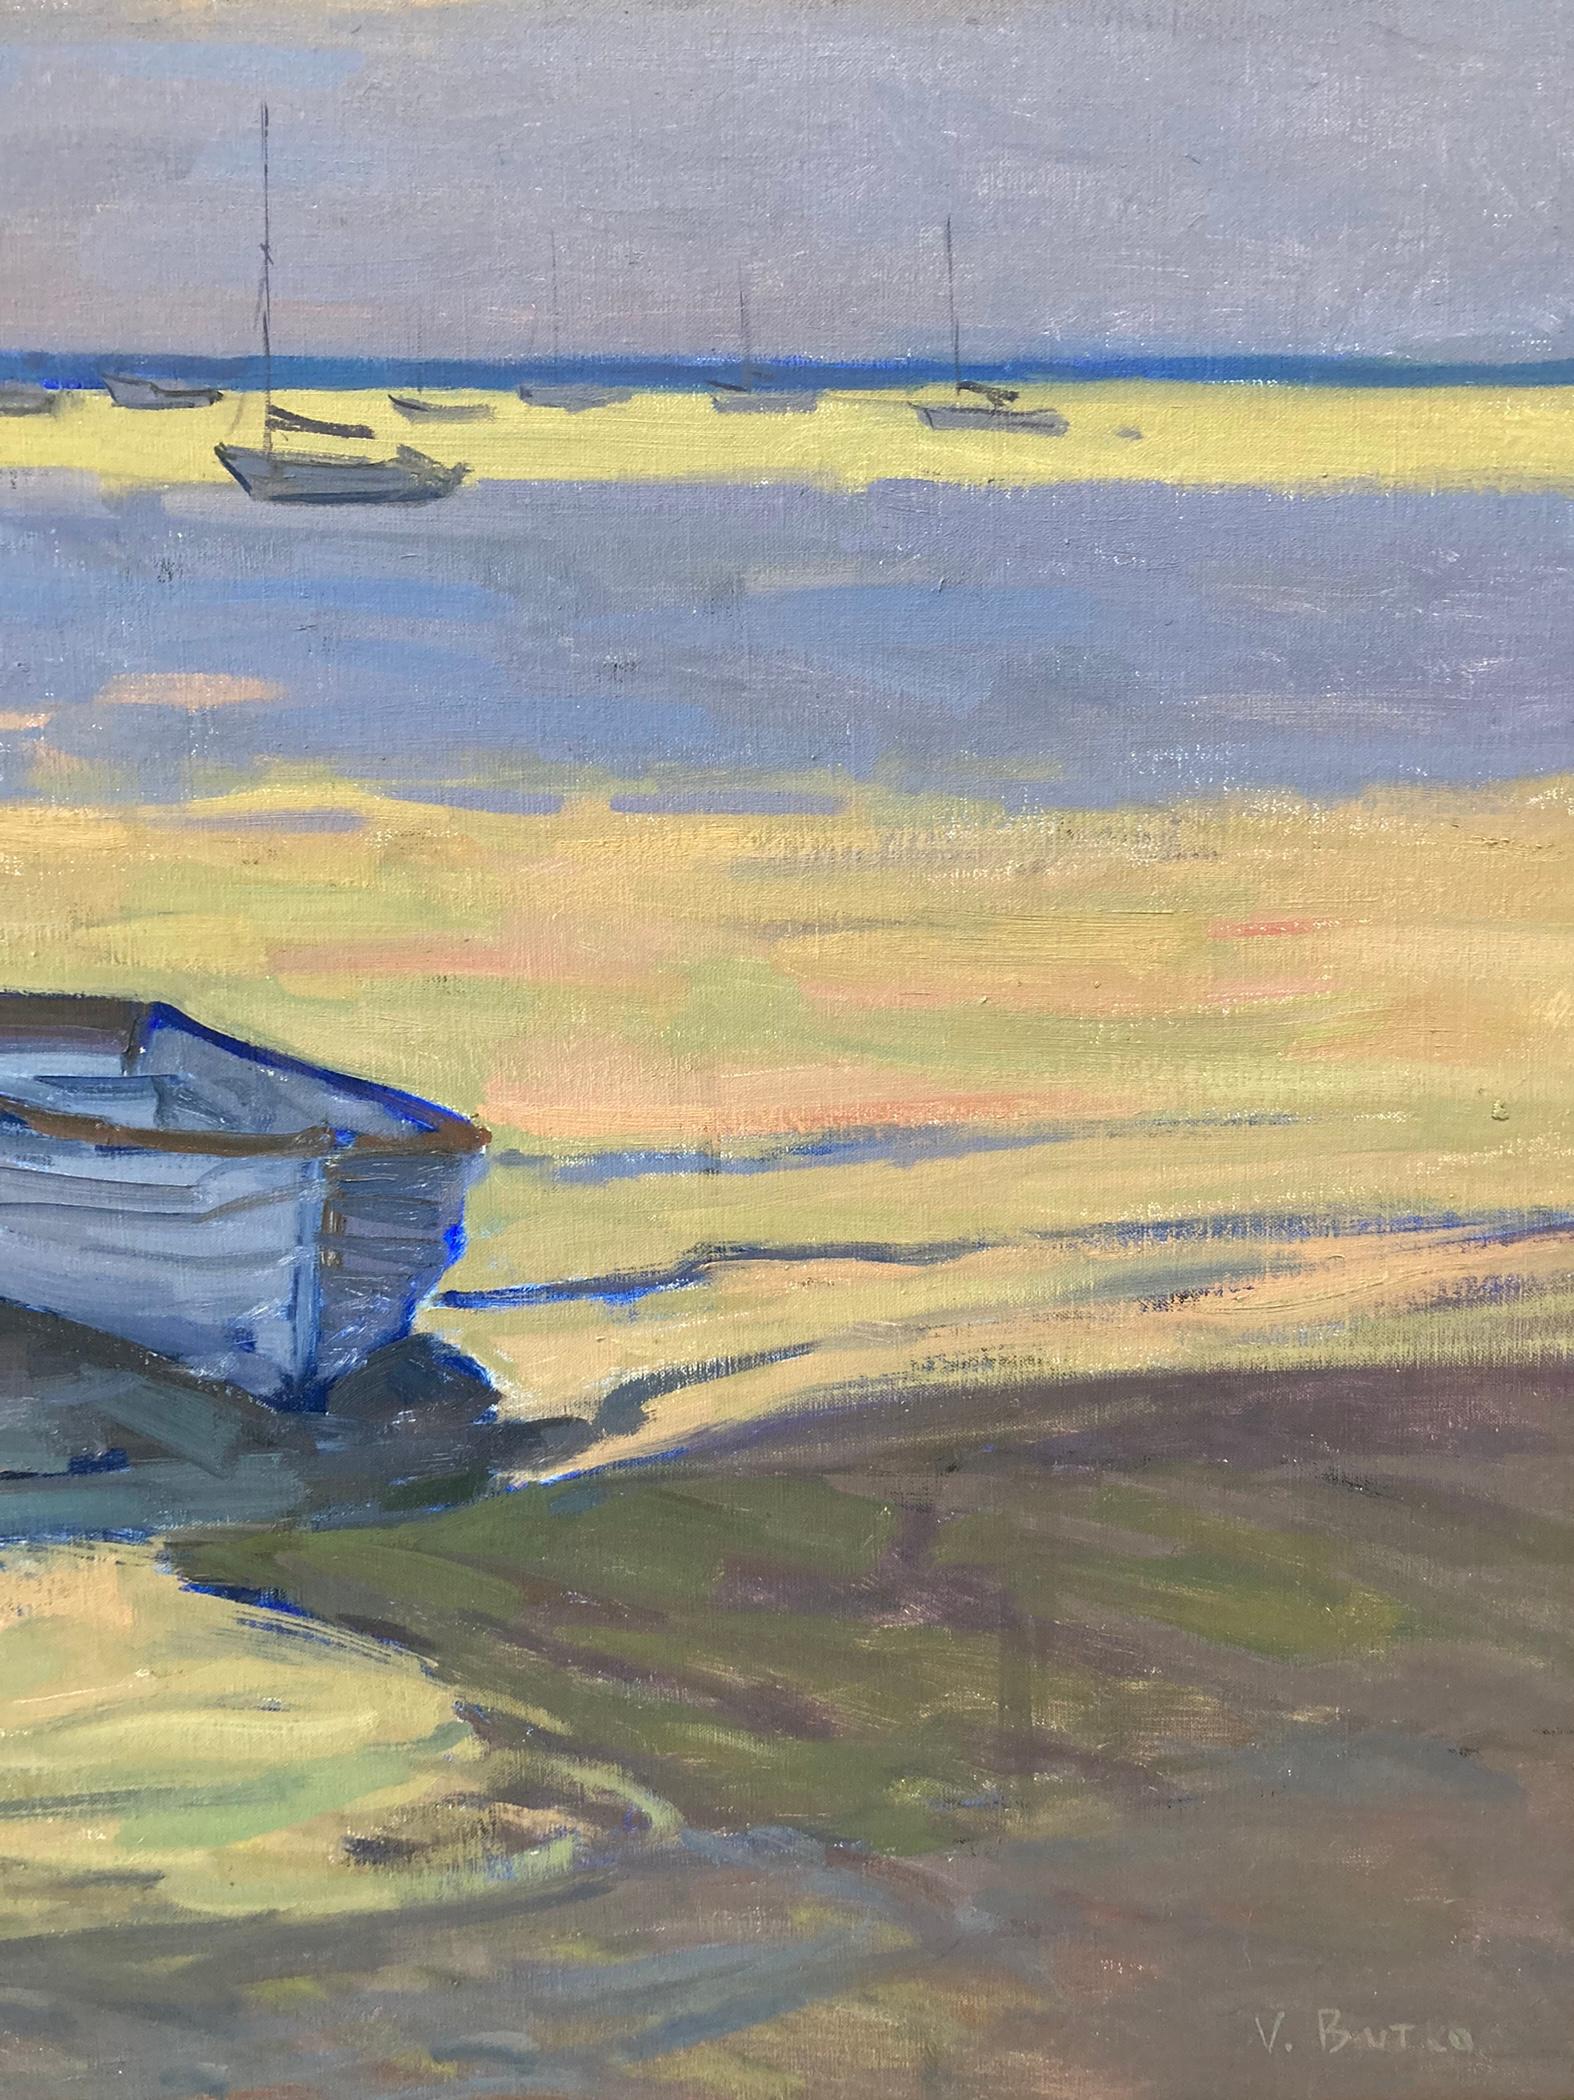 Une grande peinture de paysage représentant un bateau arrêté sur le rivage du port de Dering. Le ciel est d'une intrigante nuance de chartreuse qui donne l'impression que le soleil rose orangé qui perce les nuages lavande à l'horizon brille. La même